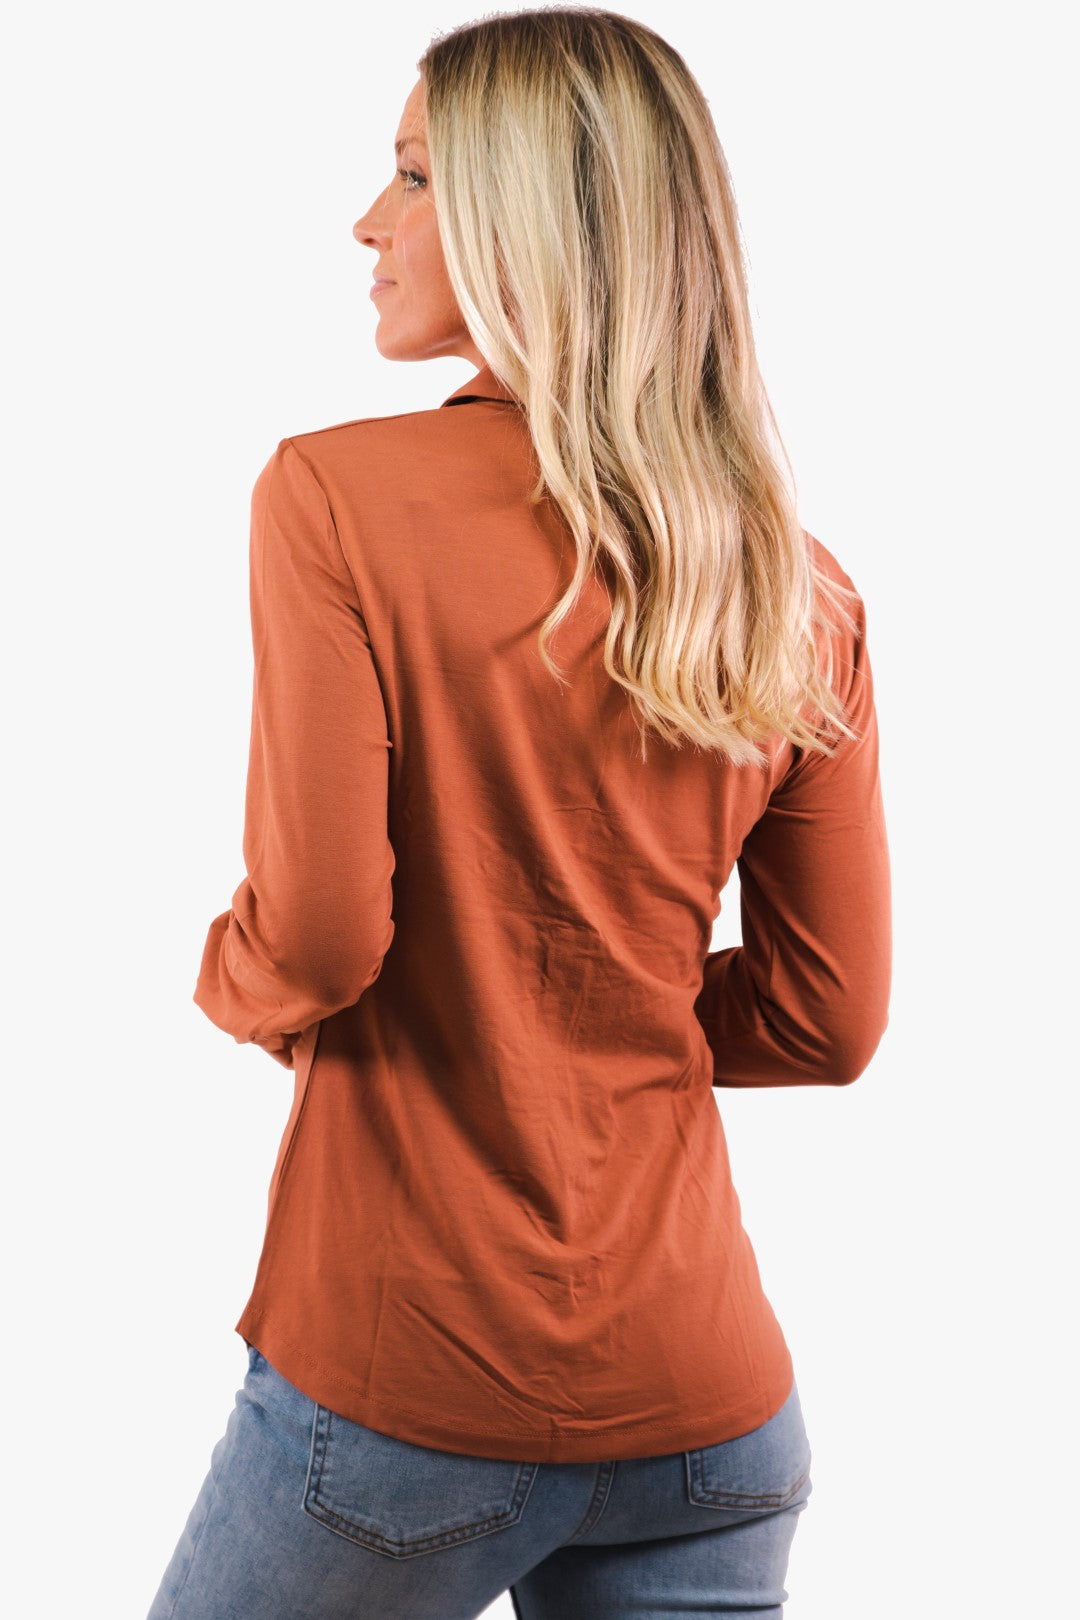 Esqualo blouse in Copper color